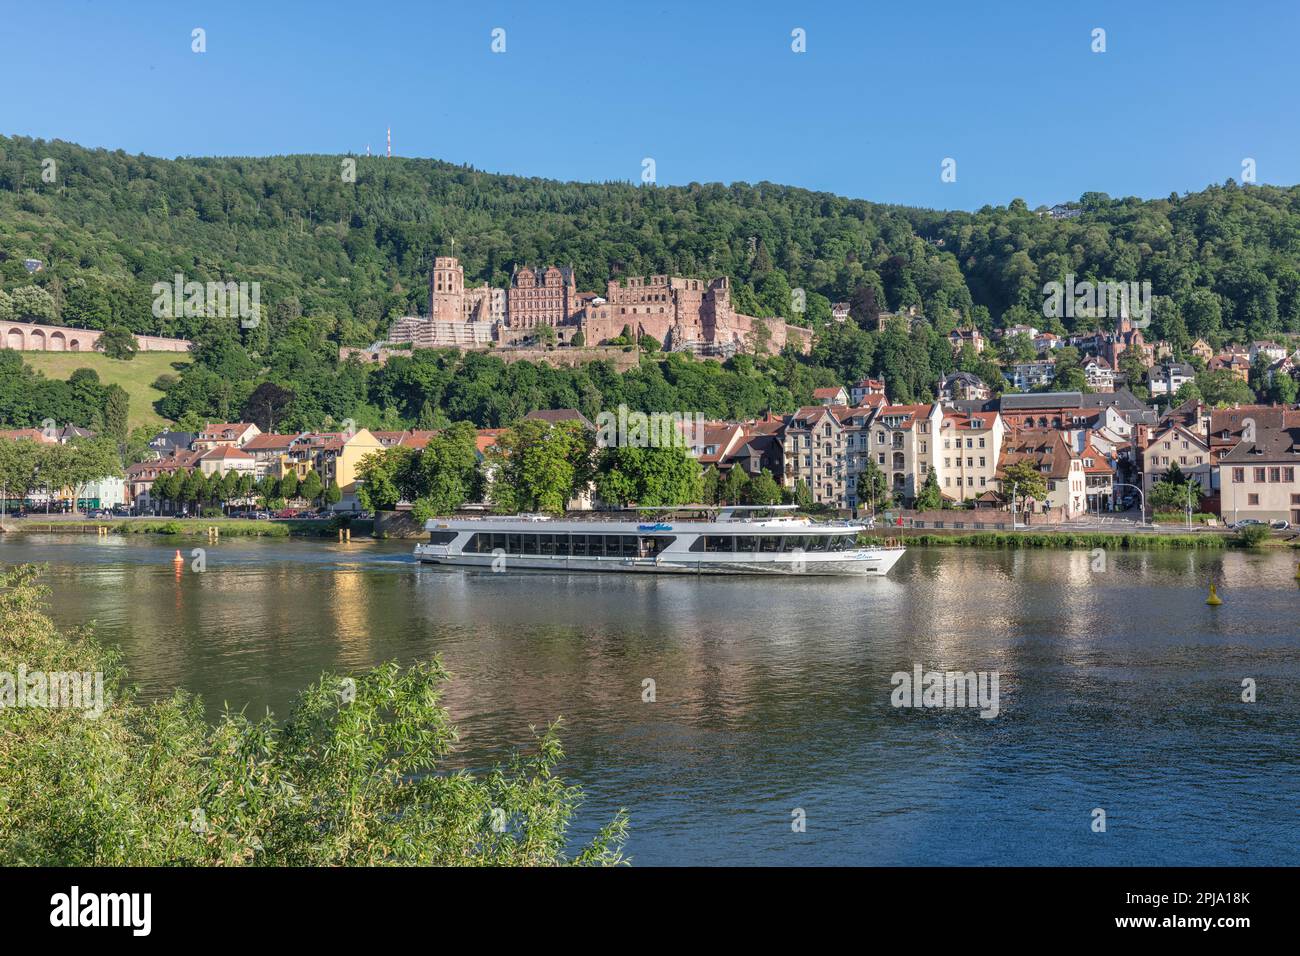 Crociera in battello sul fiume Neckar presso il Castello di Heidelberg sul fianco della collina di Konigstuhl, un edificio gotico rinascimentale del XIII secolo nella valle di Neckar. Heidelberg. Foto Stock